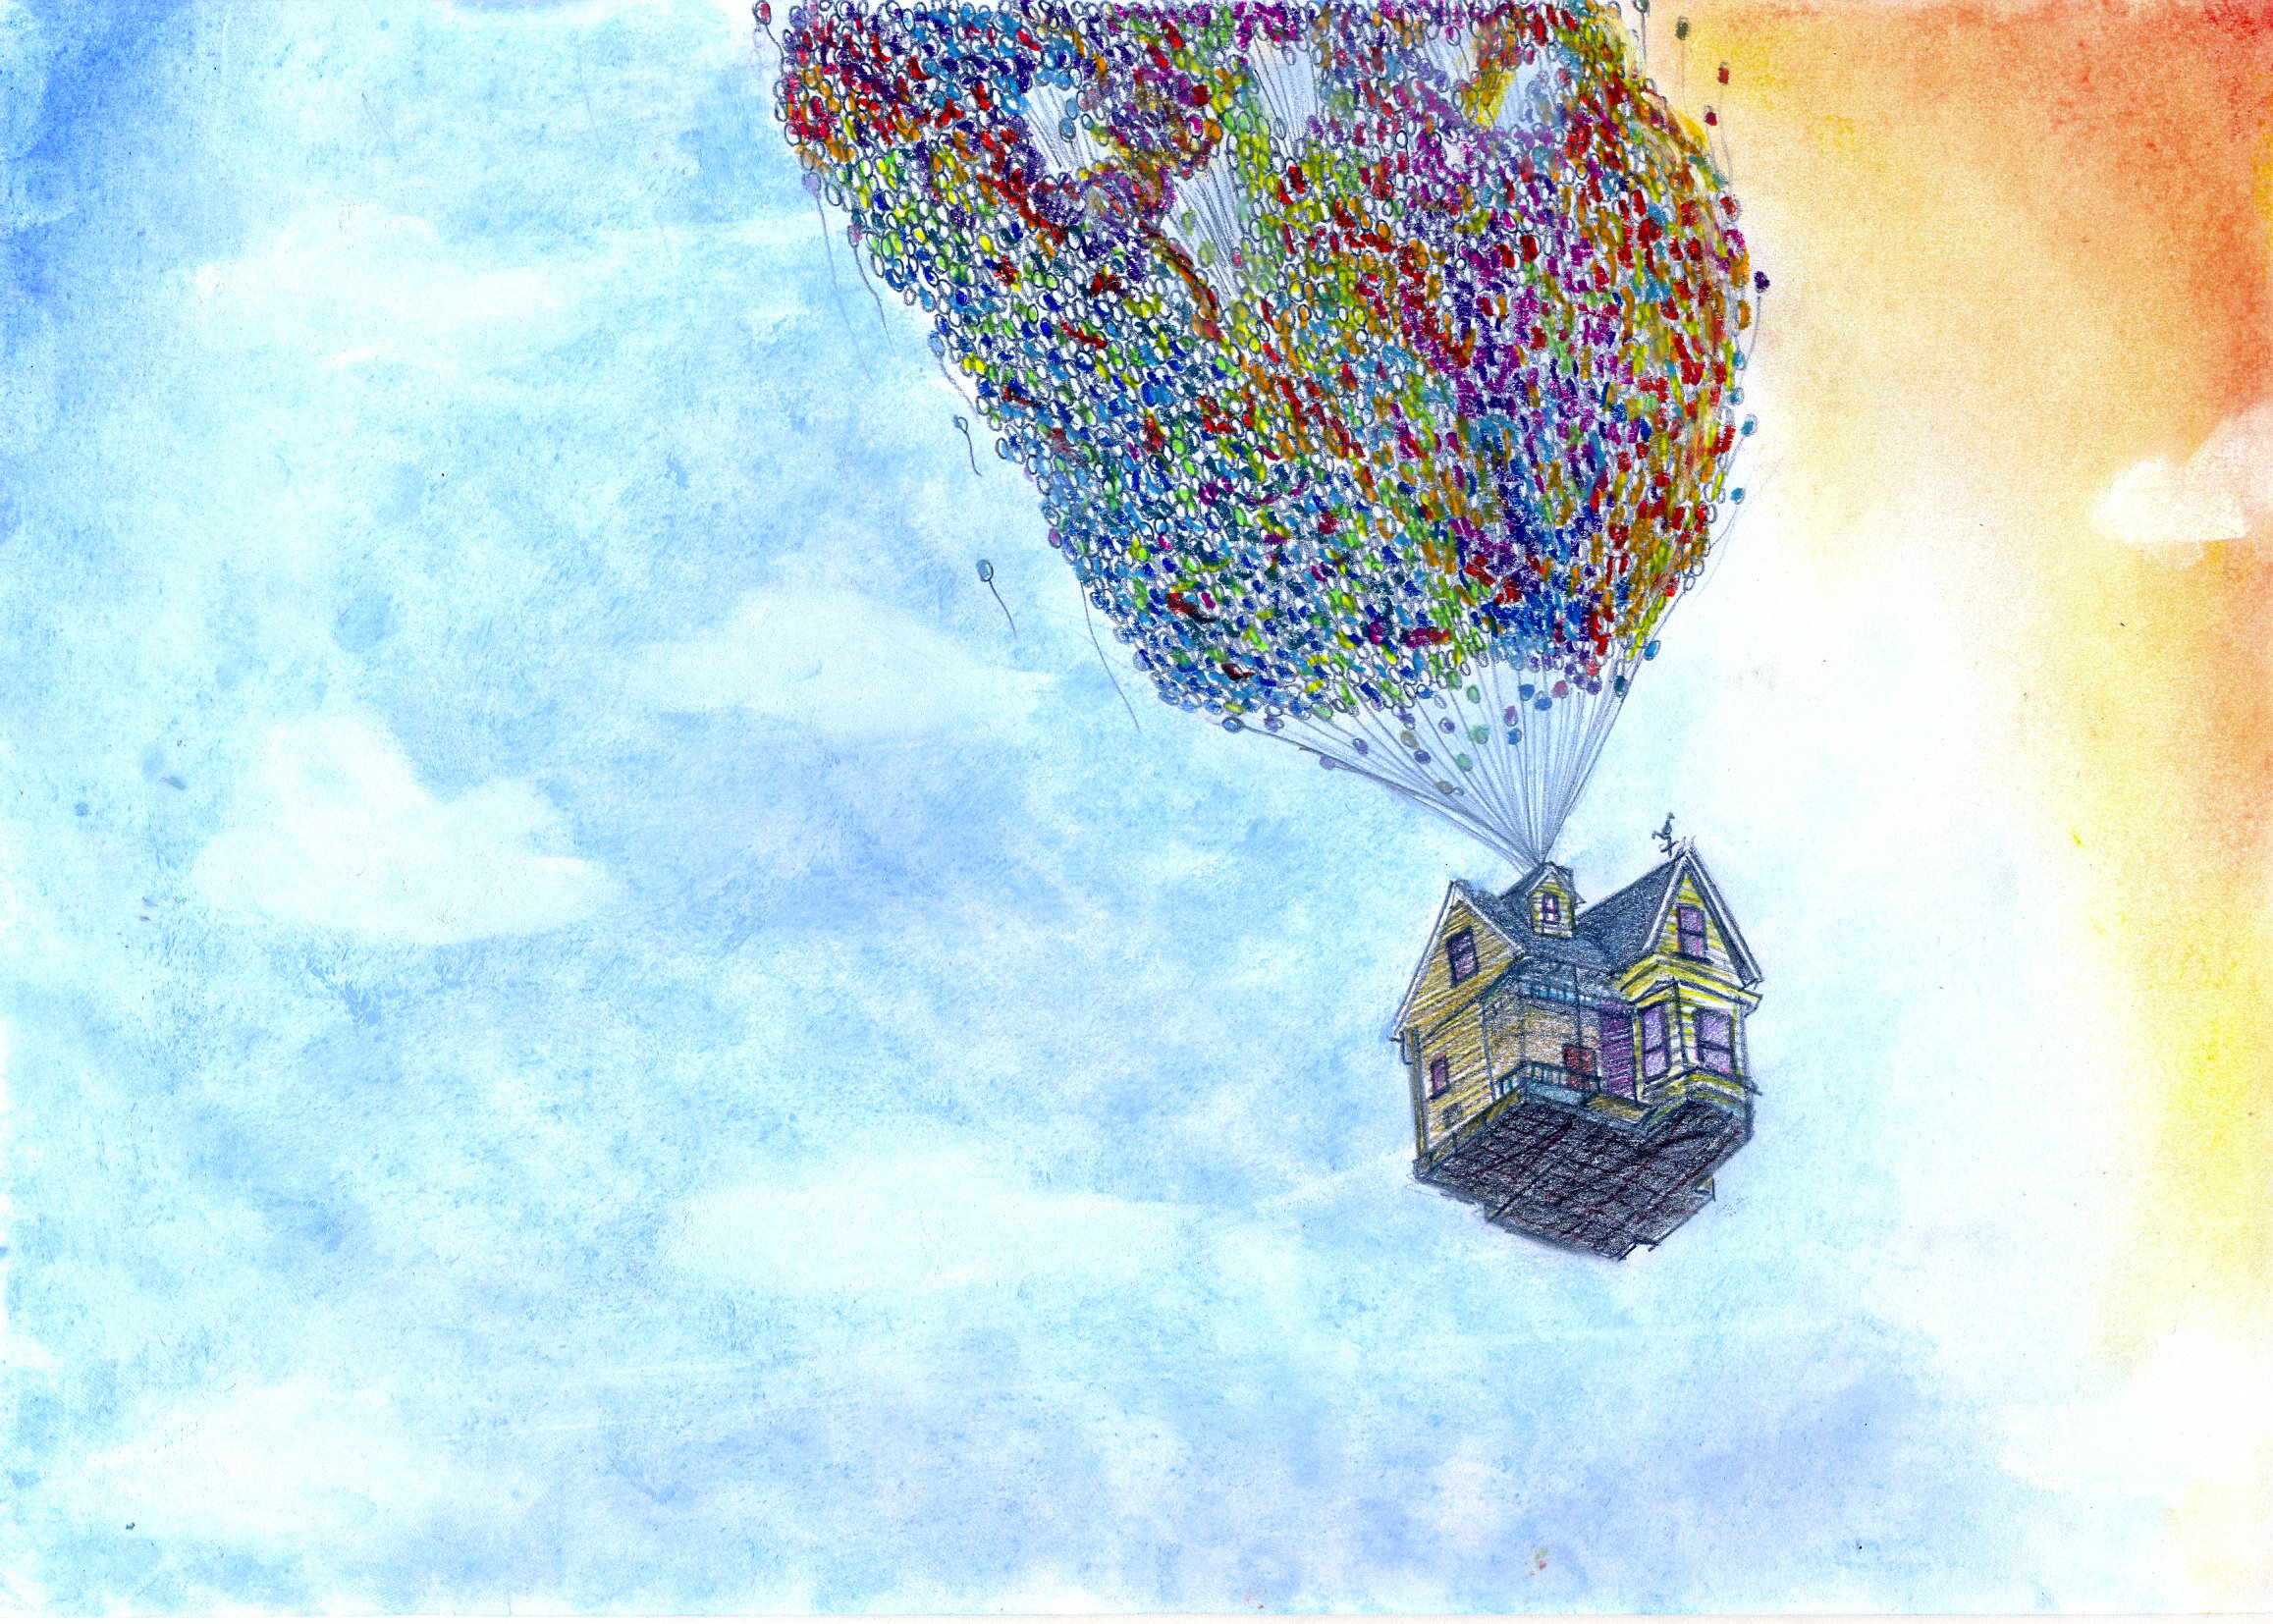 Дом летающий в небе. Домик на воздушных шариках. Обои с воздушными шарами. Летающий дом. Воздушный шар вверх.